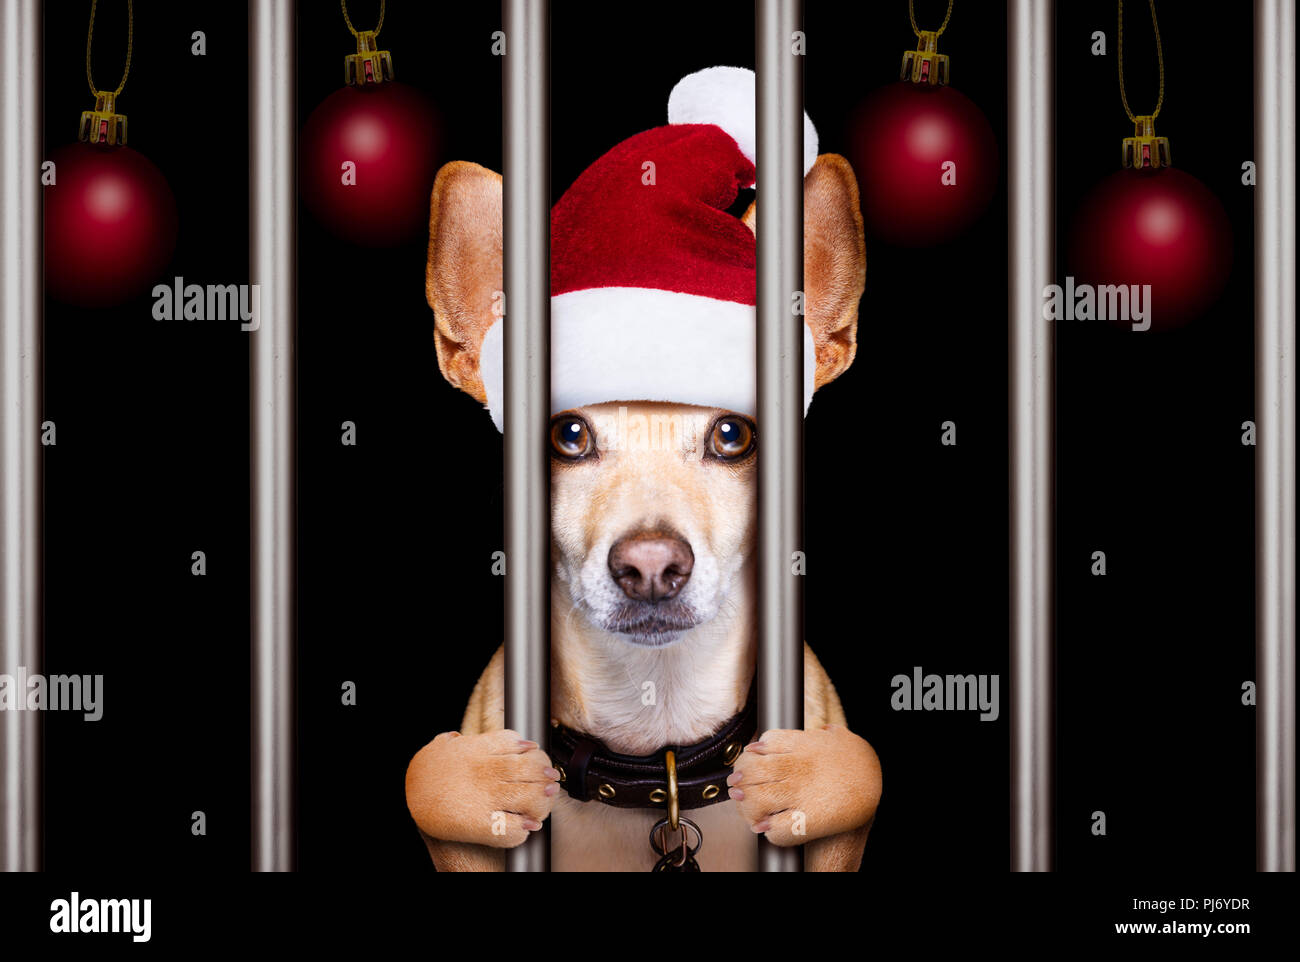 Des électroniques de a christmas santa mauvais chien derrière les barreaux en prison ou Banque D'Images